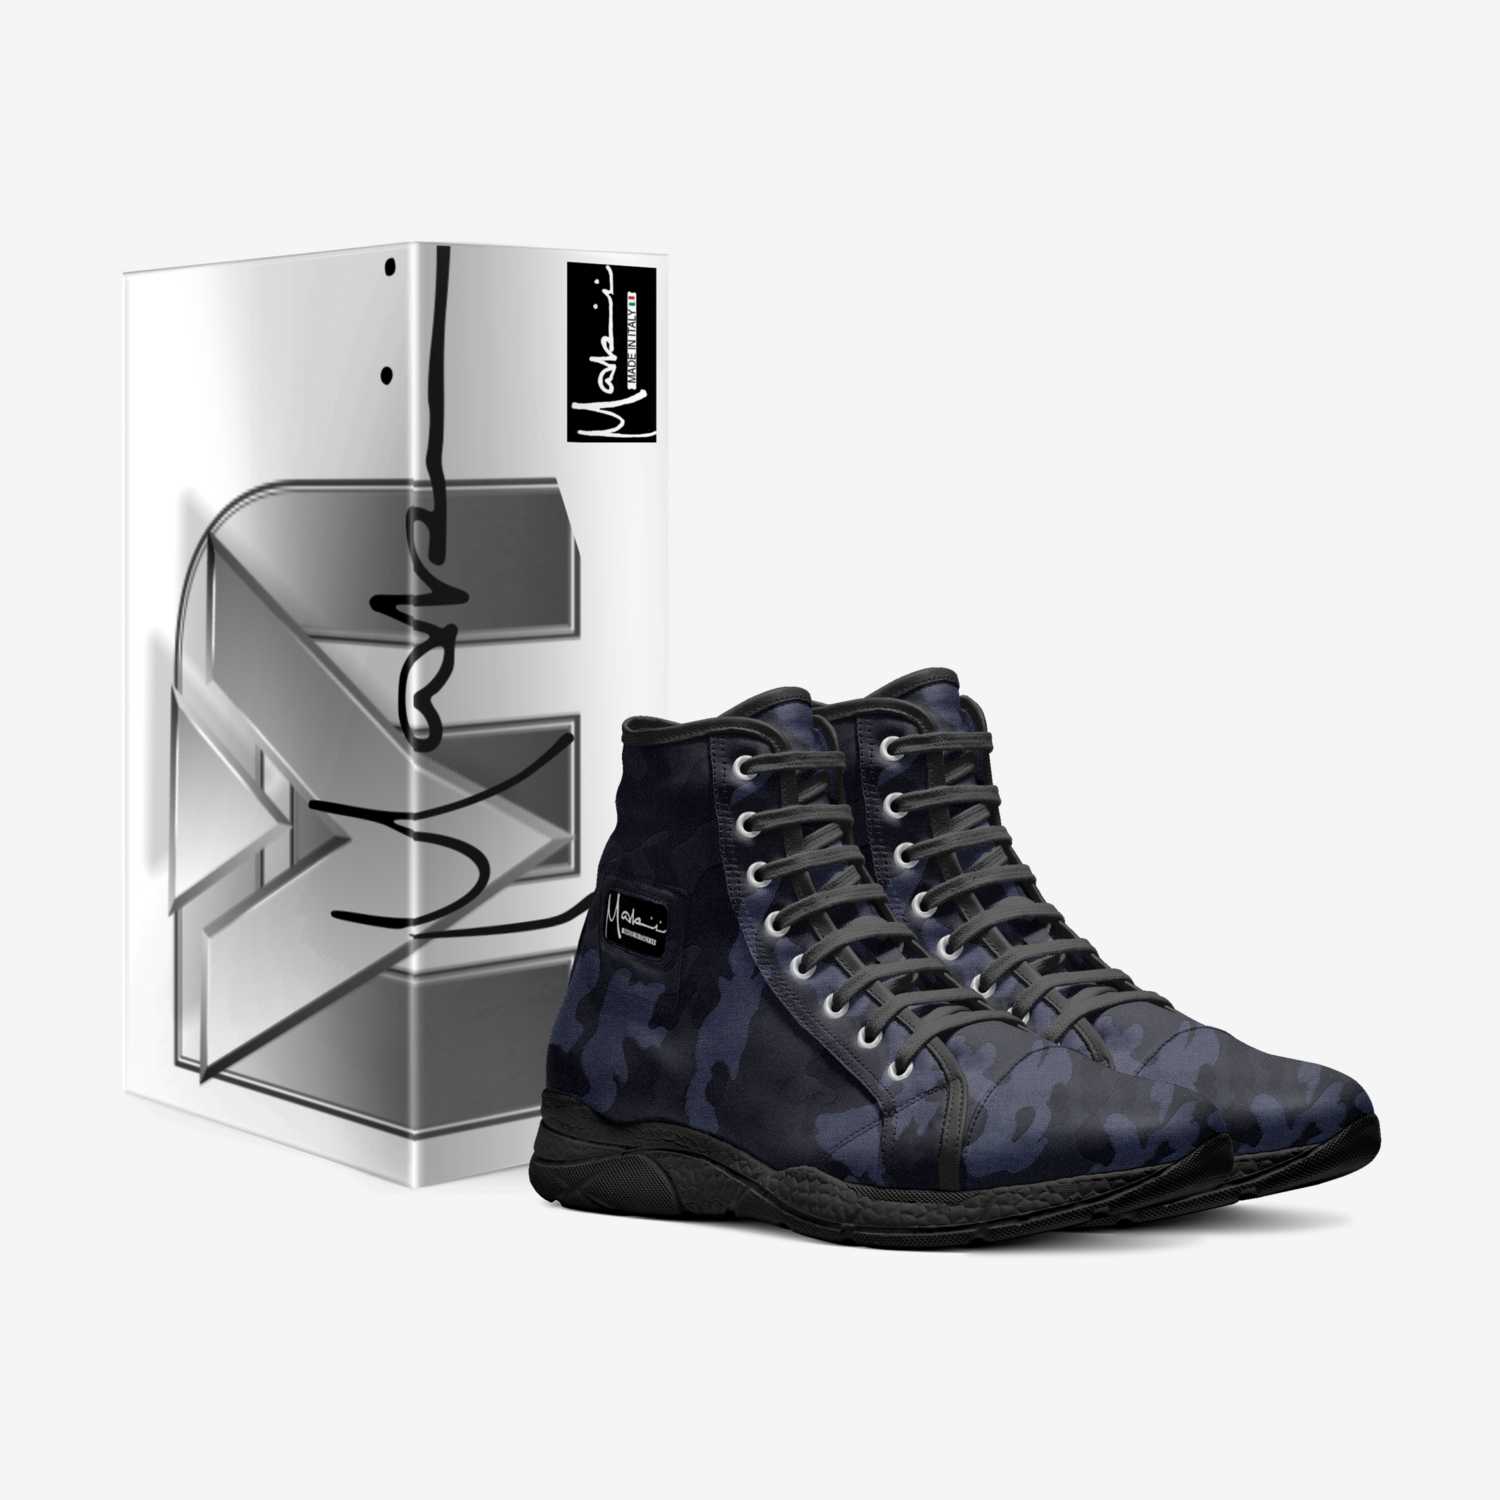 MAKIRI - CAMO custom made in Italy shoes by Makiri Duckett | Box view